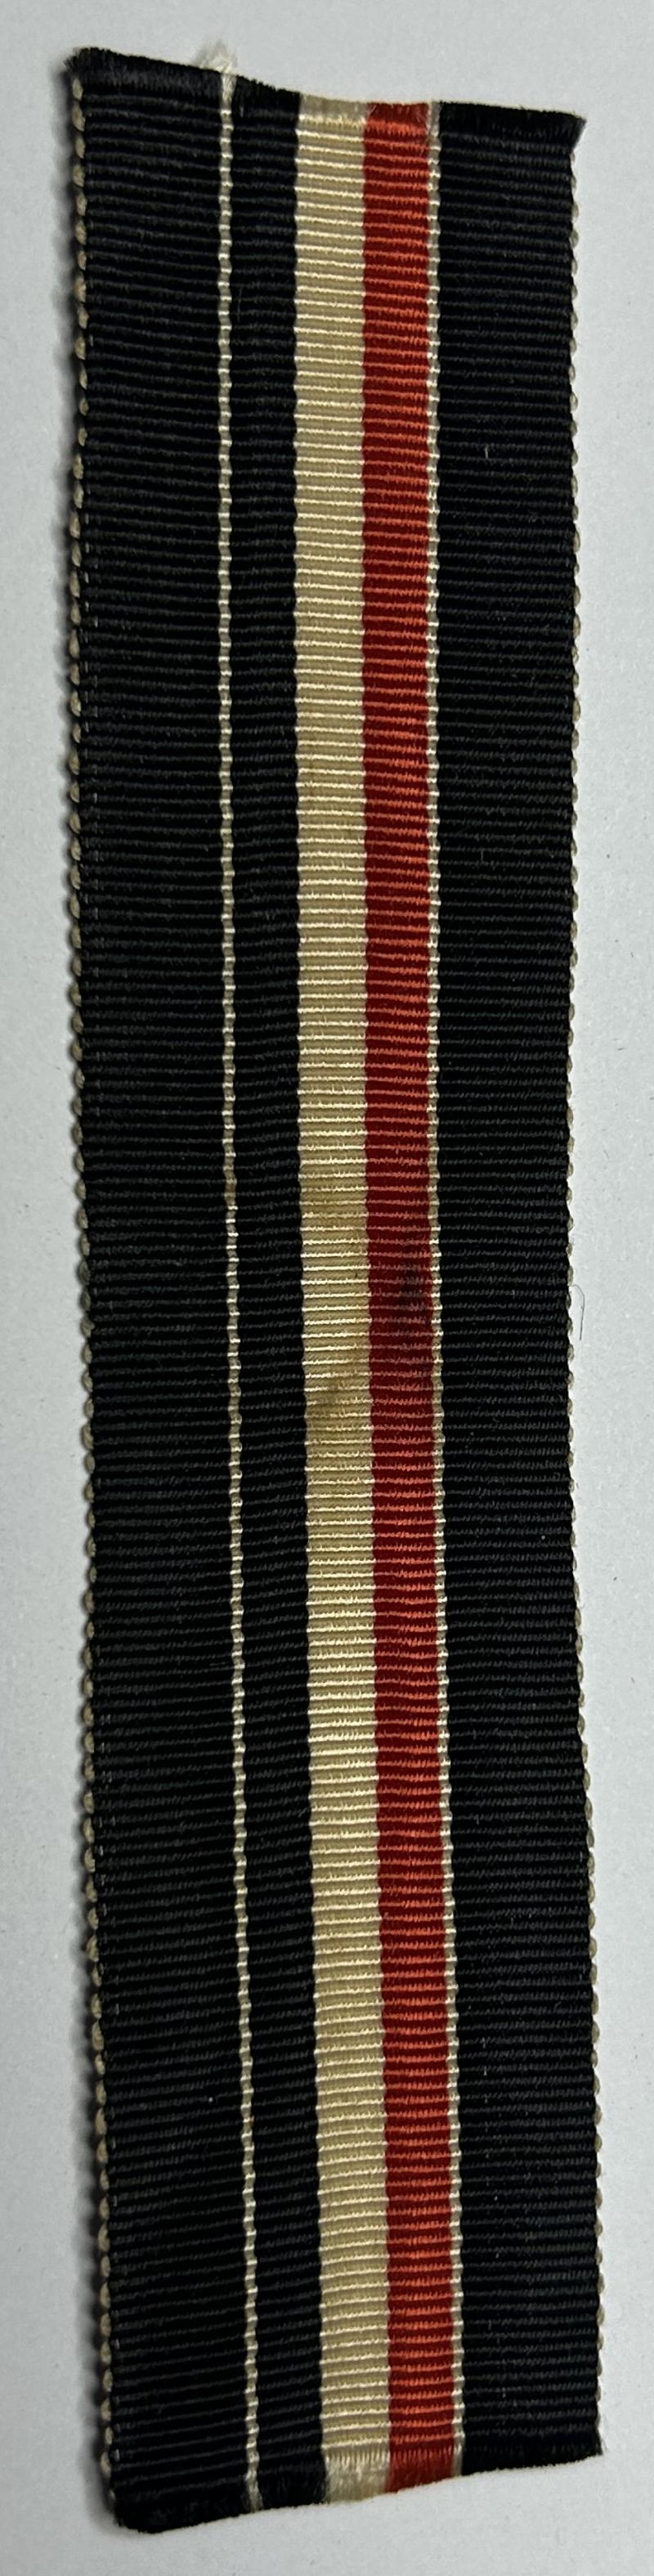 Deutsche Reich Orginal Ordensband für die Medaille für Tapferkeit im Weltkriege 1914-1918